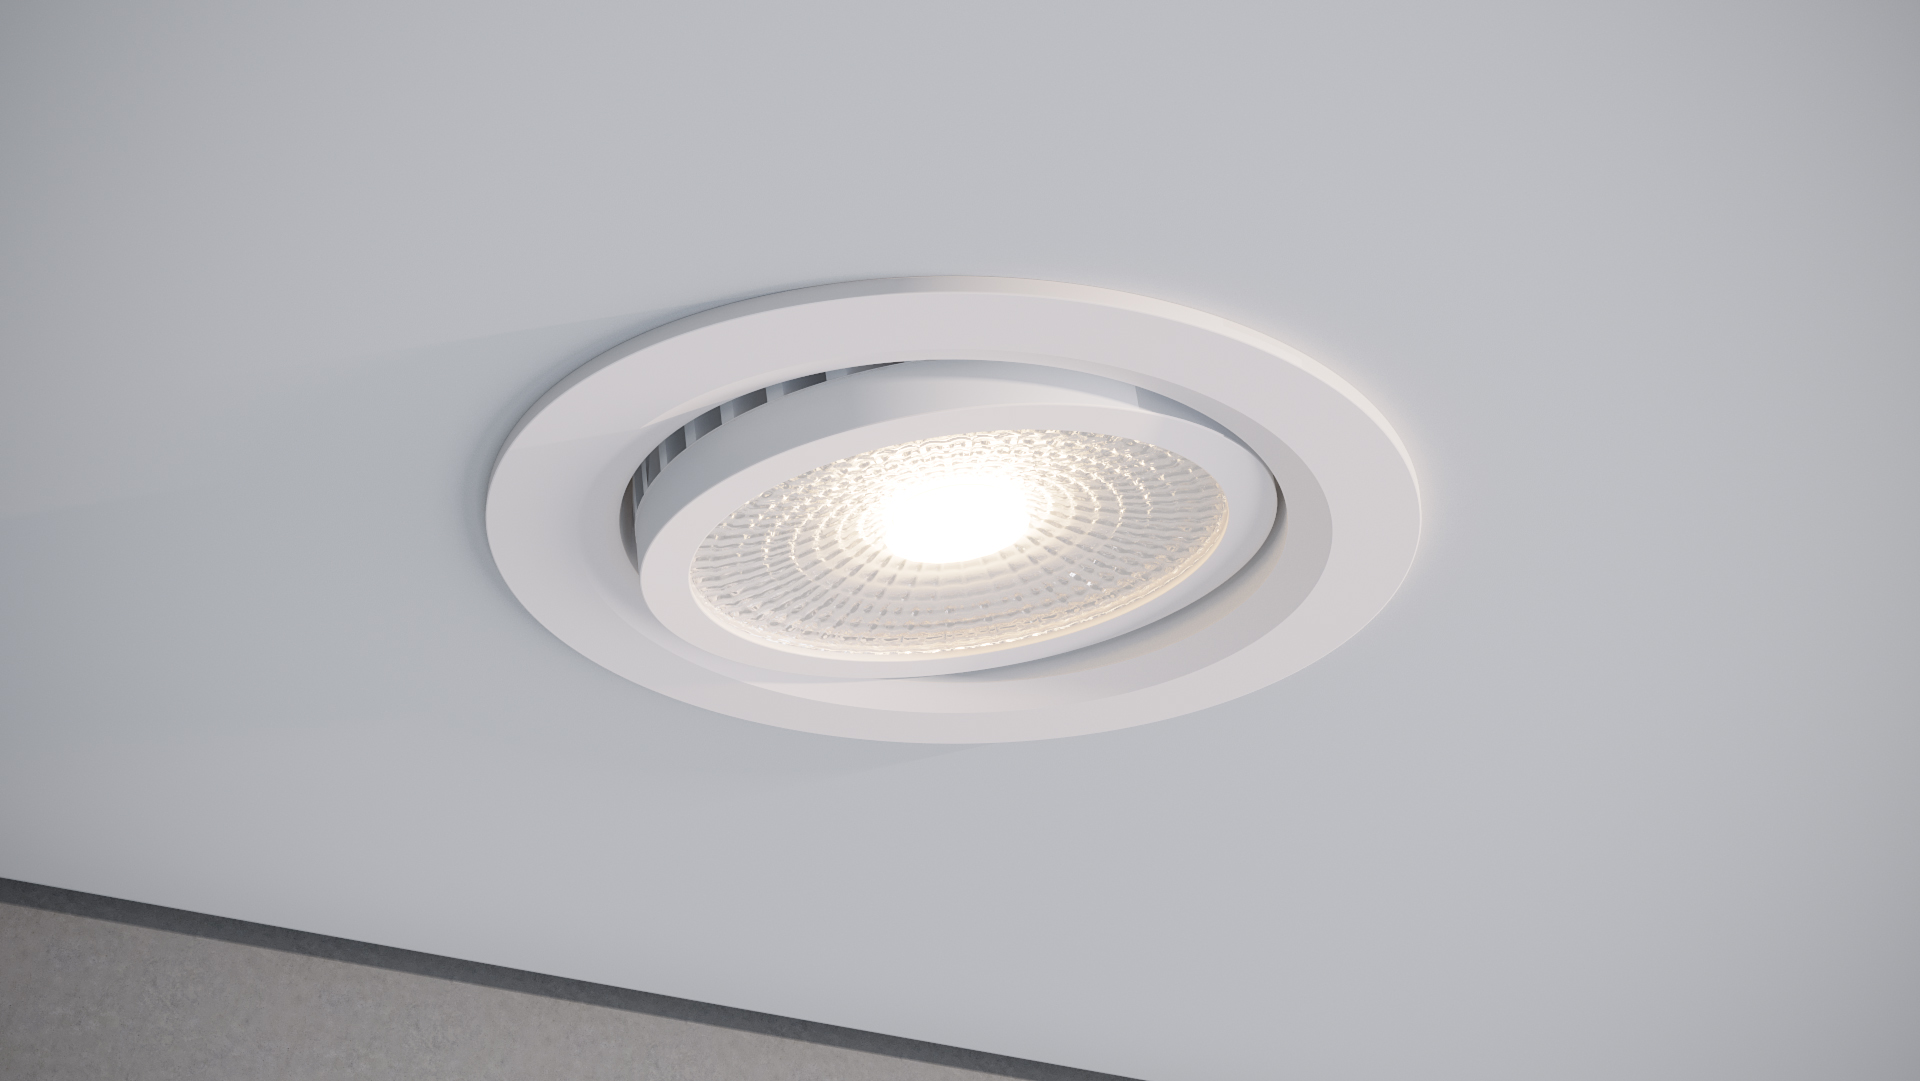 Quest Light Светильник светодиодный встраиваемый, белый, LED 9w, 800lm, 3000K, IP44, 220v, Module 01 white